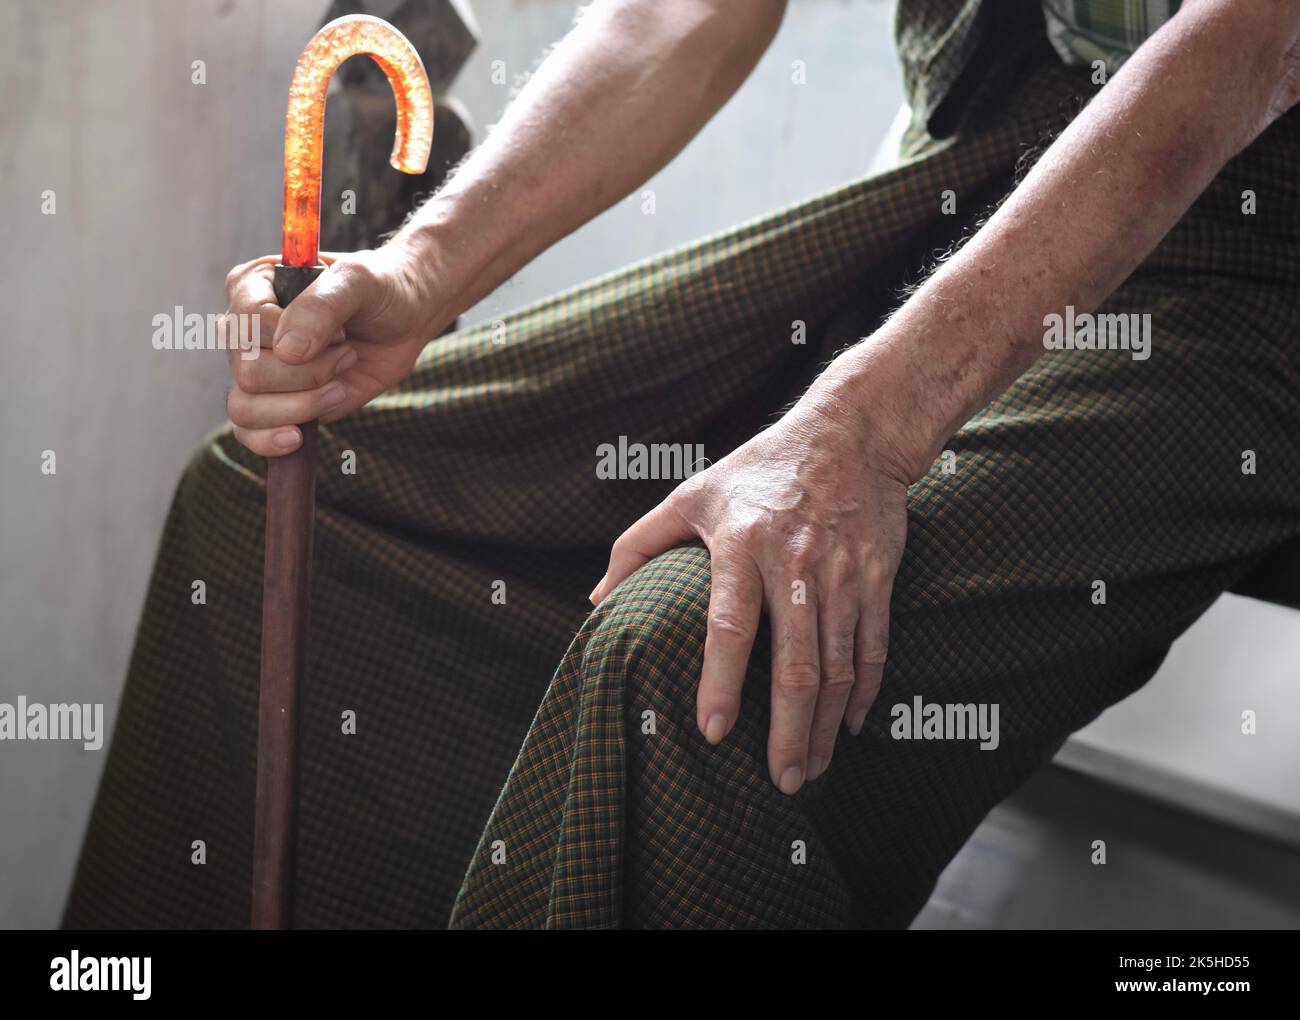 Dolore alle articolazioni del ginocchio nell'anziano asiatico del Myanmar. Concetto di osteoartrite, artrite reumatoide, tendinite rotulea, borsite prepatellare, lig collaterale Foto Stock